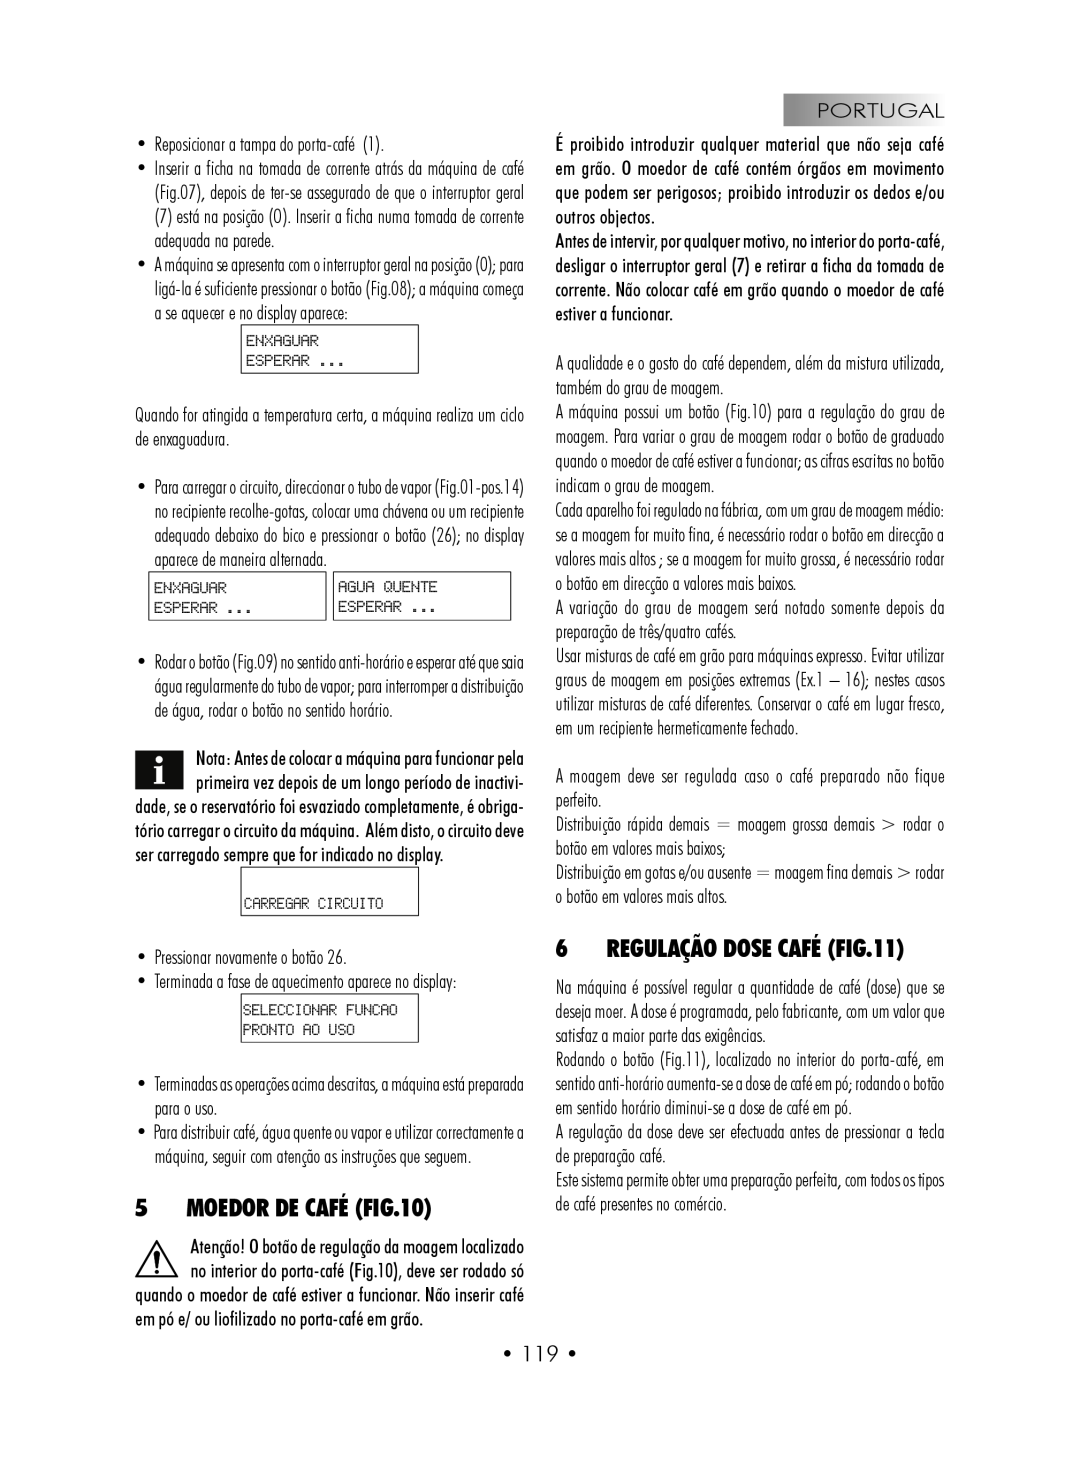 Gaggia SUP027YDR manual Moedor De Café, Regulação Dose Café, • 119 • 